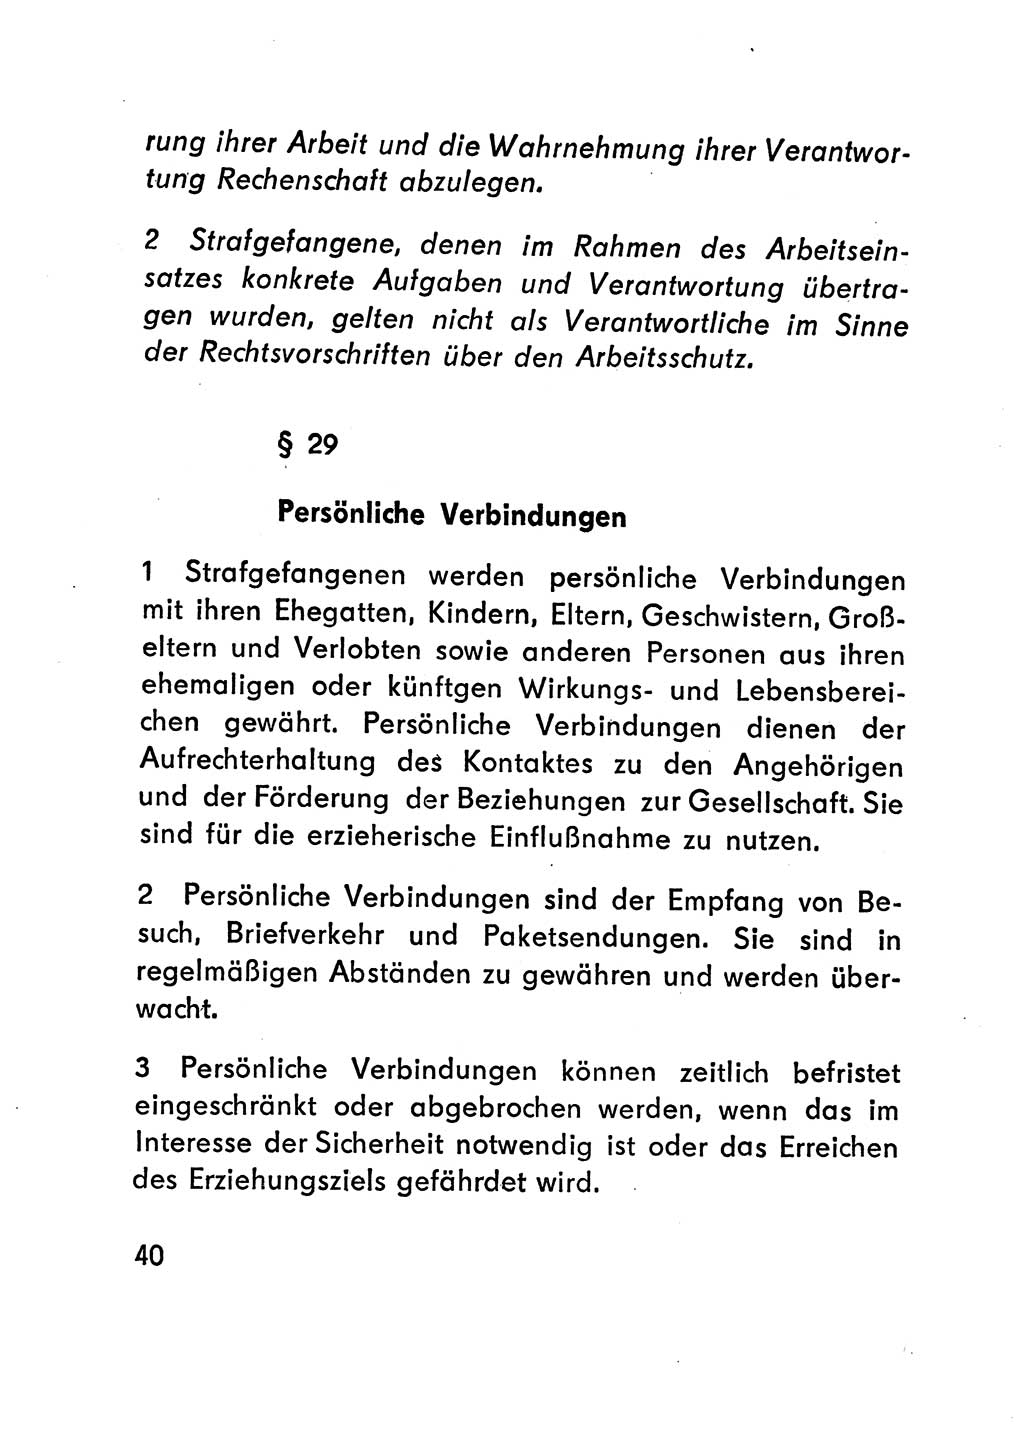 Gesetz über den Vollzug der Strafen mit Freiheitsentzug (Strafvollzugsgesetz) - StVG - [Deutsche Demokratische Republik (DDR)] 1977, Seite 40 (StVG DDR 1977, S. 40)